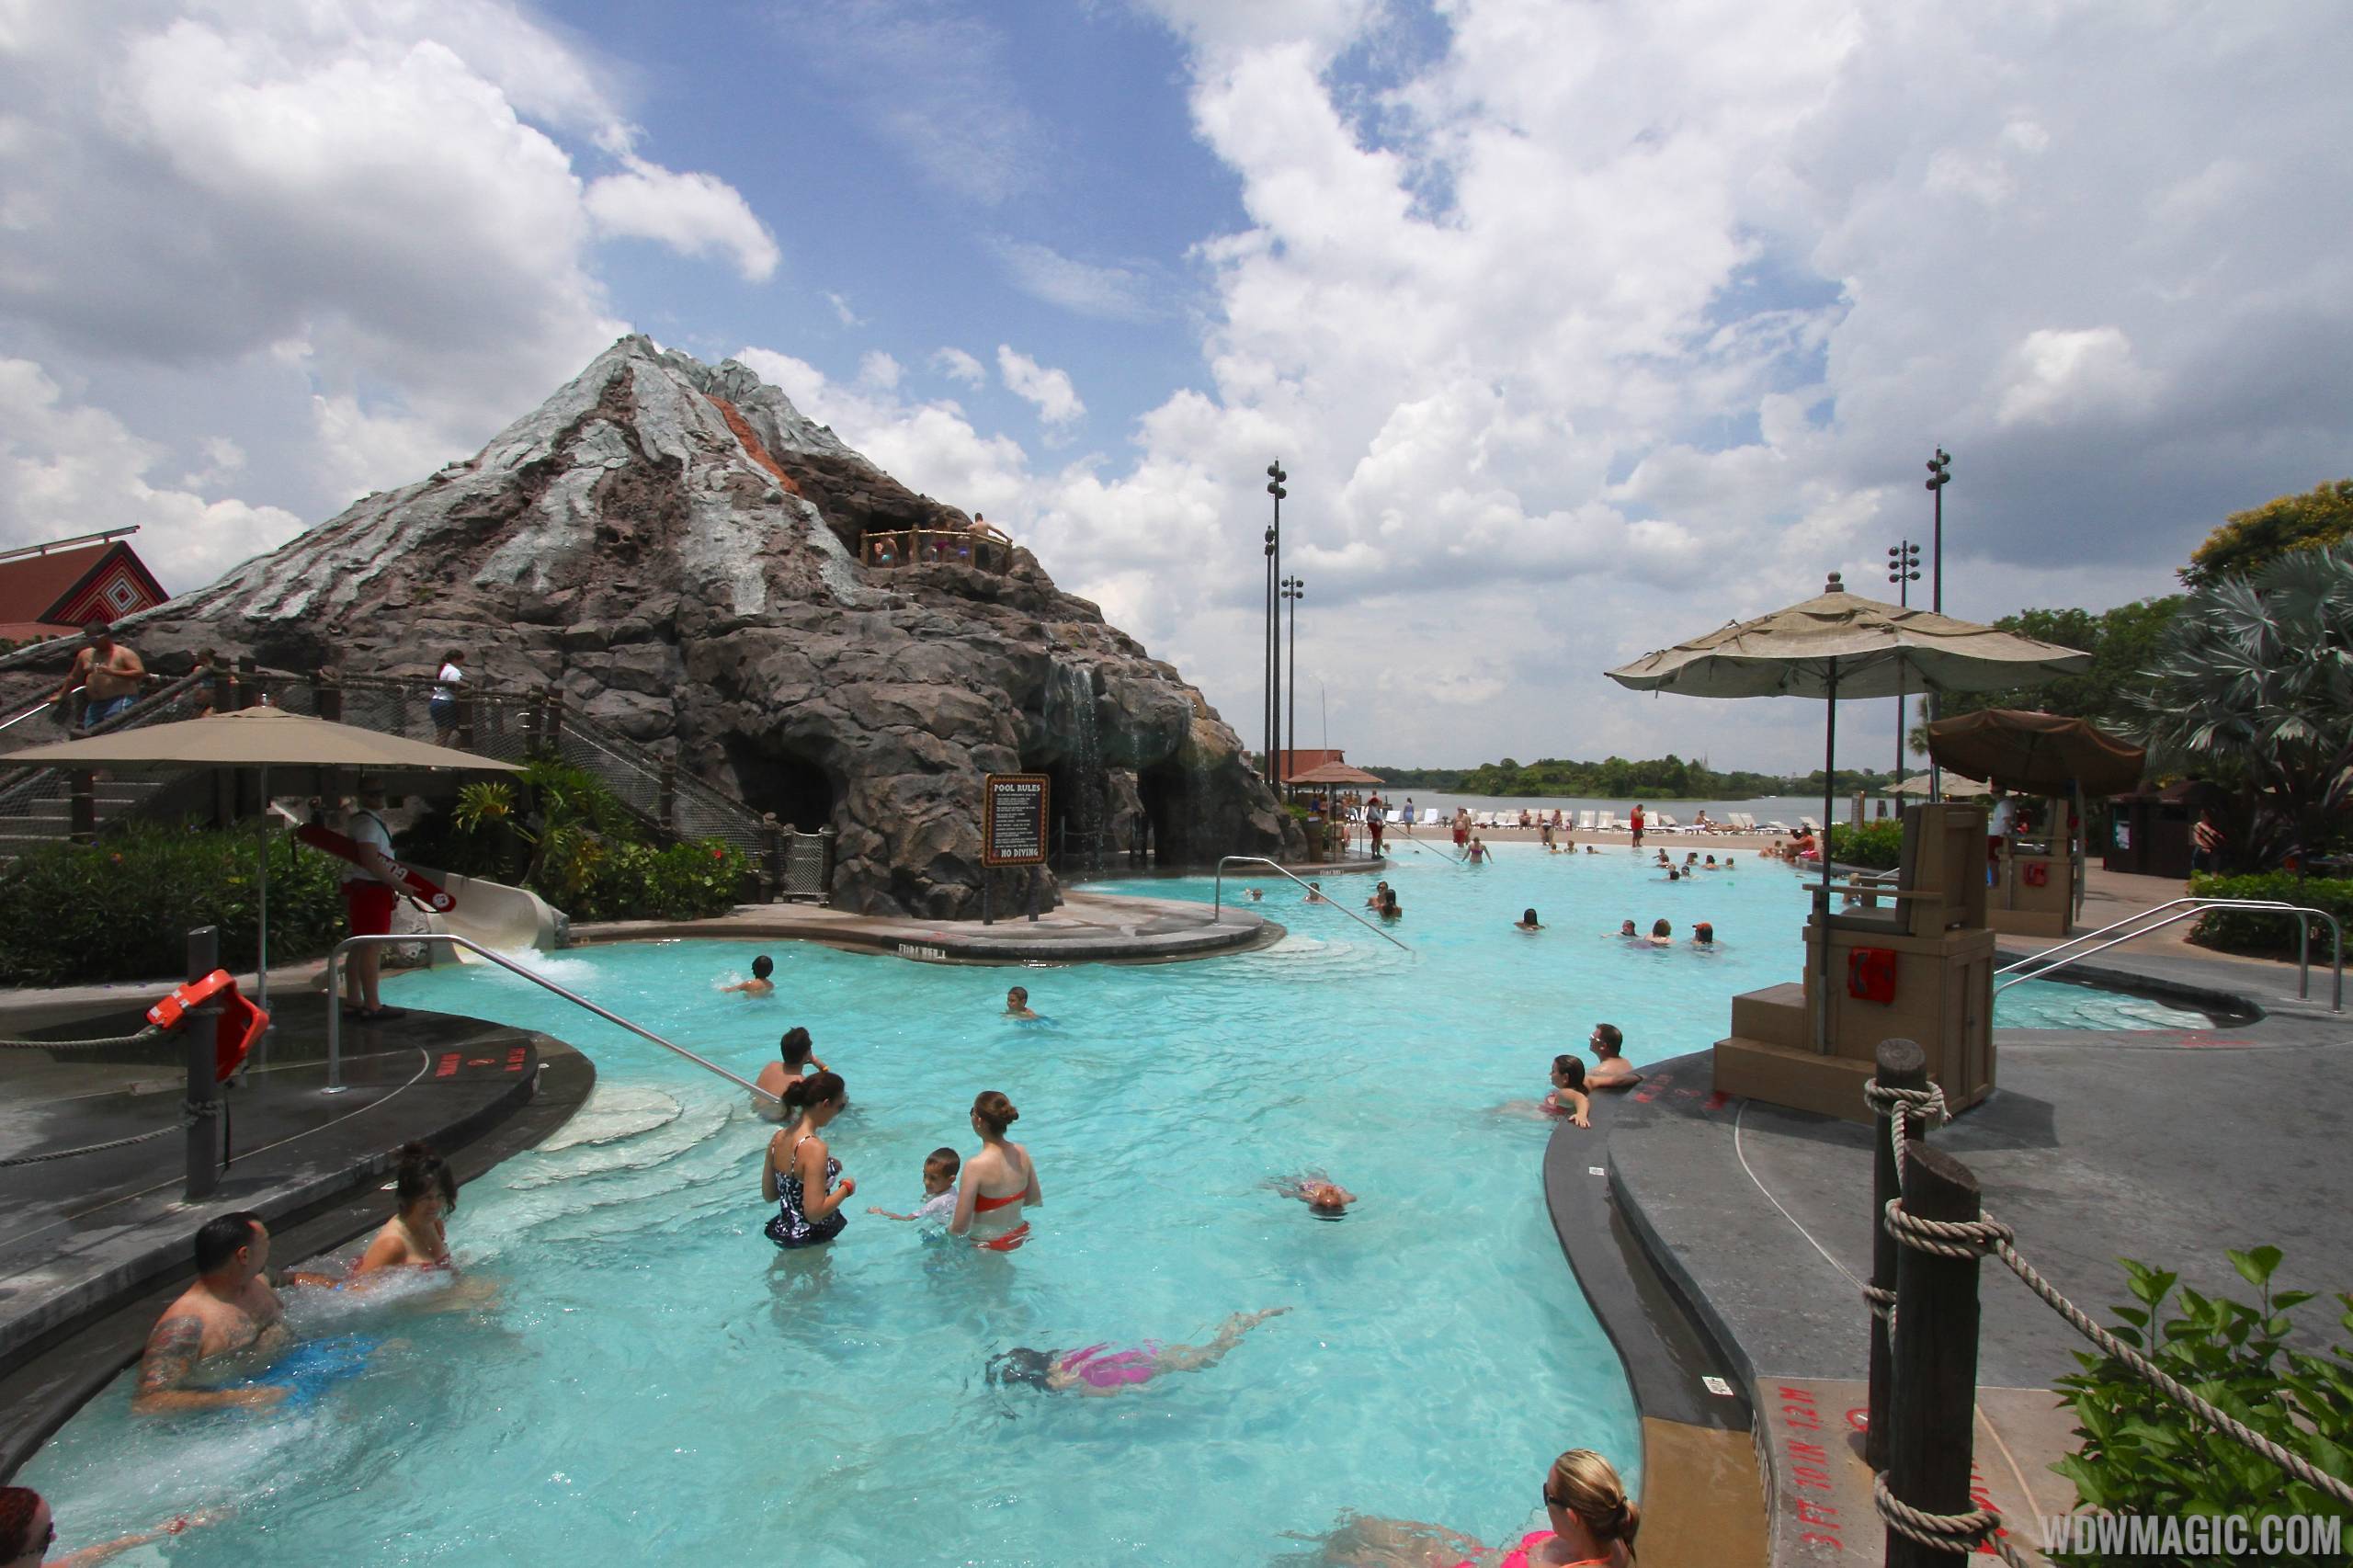 Pool area at Disney's Polynesian Resort before 2014 remodel